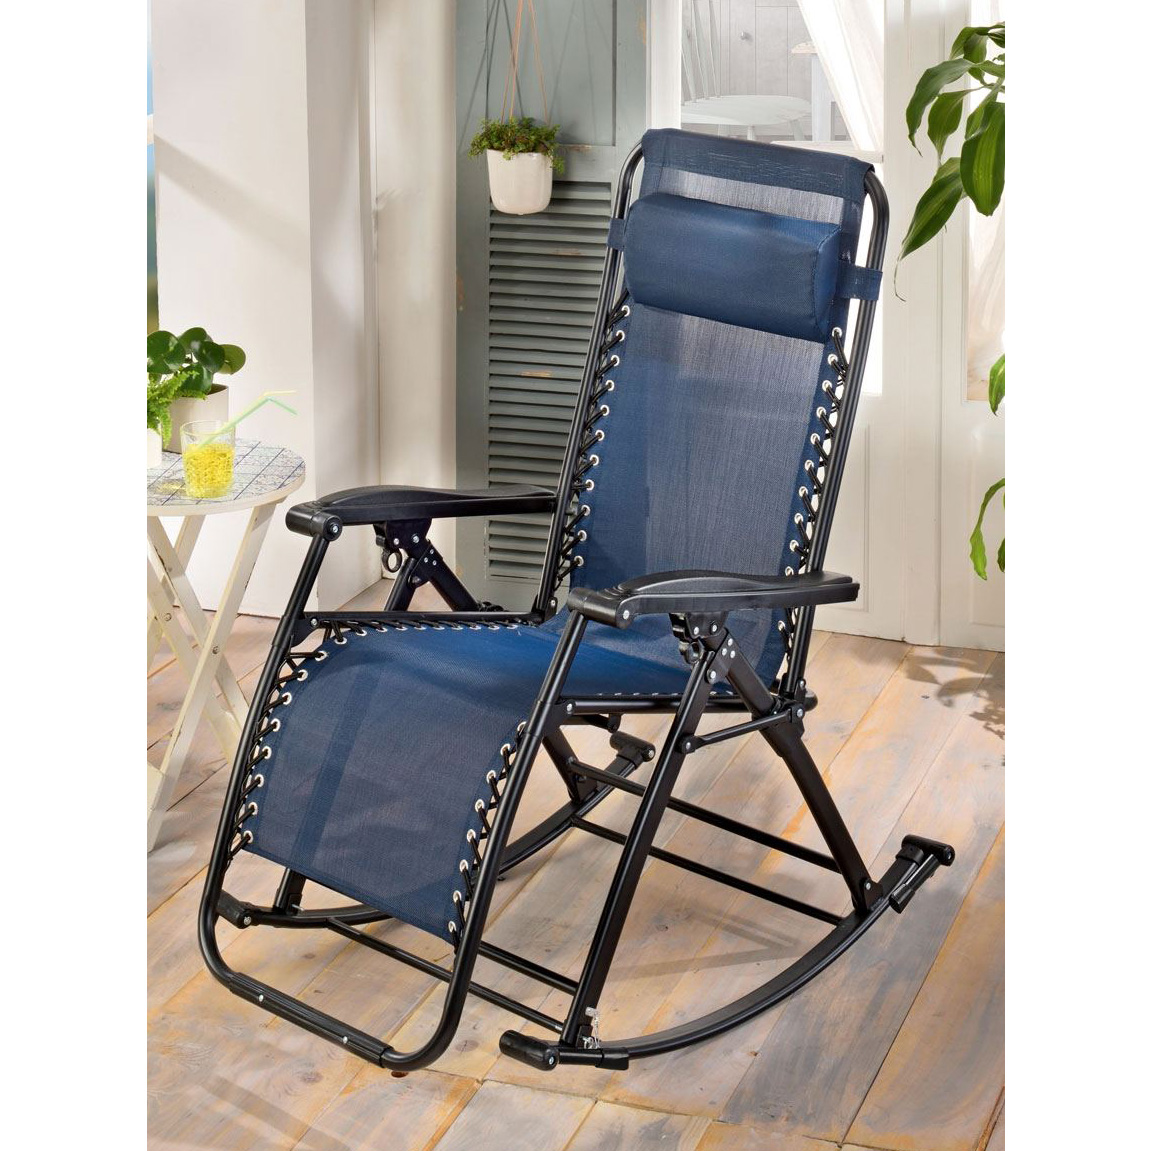 Steel rocking deck chair 70x160x90 cm